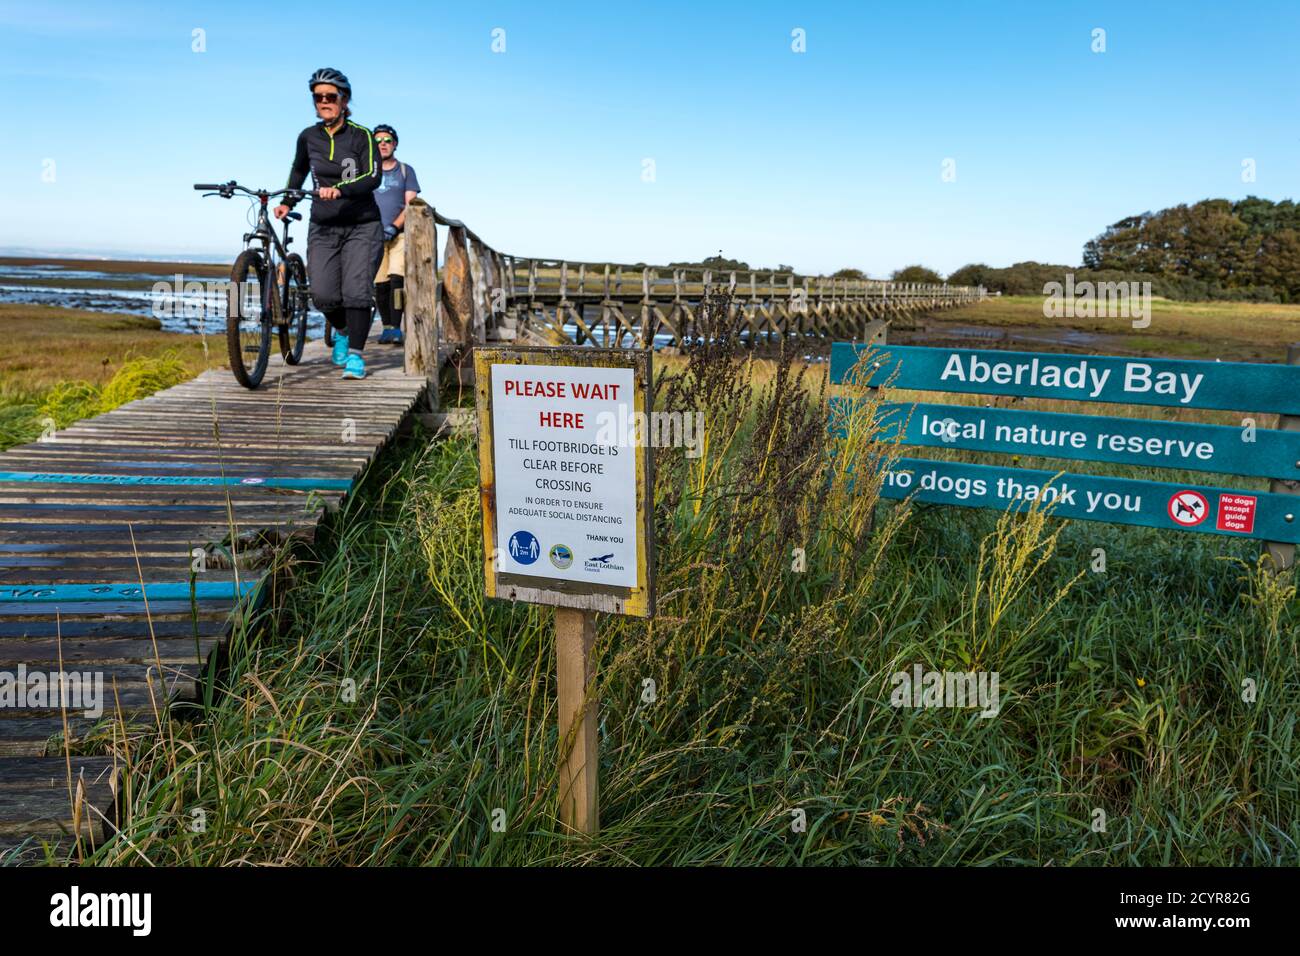 Aberlady Nature Reserve, East Lothian, Scozia, Regno Unito, 2 ottobre 2020. Regno Unito Meteo: Una bella giornata di sole sulla costa. I visitatori devono aderire al sistema di distanziamento sociale a senso unico attraverso lo stretto ponte di legno mentre i ciclisti spingono le biciclette attraverso il ponte Foto Stock